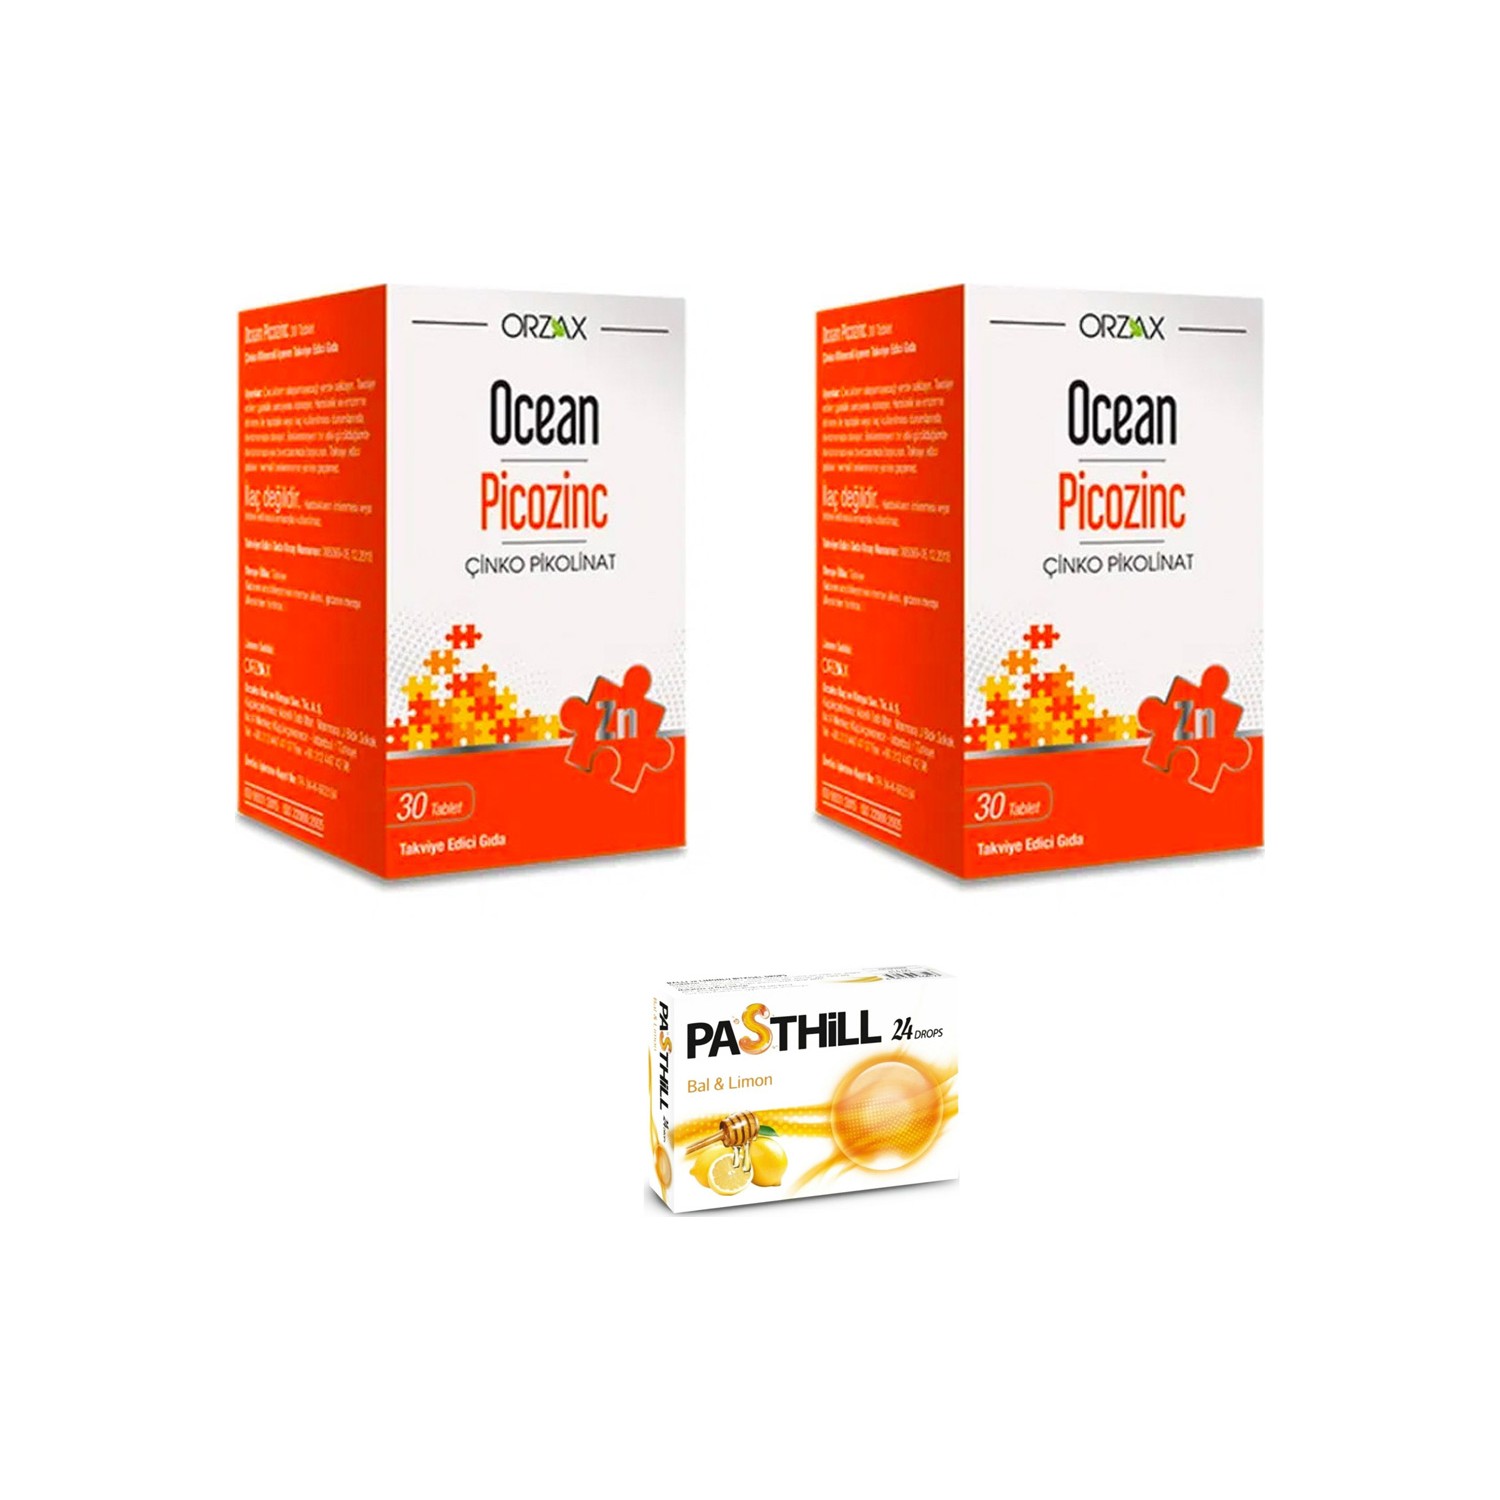 Пищевая добавка Orzax Ocean Picozinc Cinko Picolinate, 2 упаковки по 30 таблеток + Пастилки Pasthill со вкусом меда и лимона цена и фото